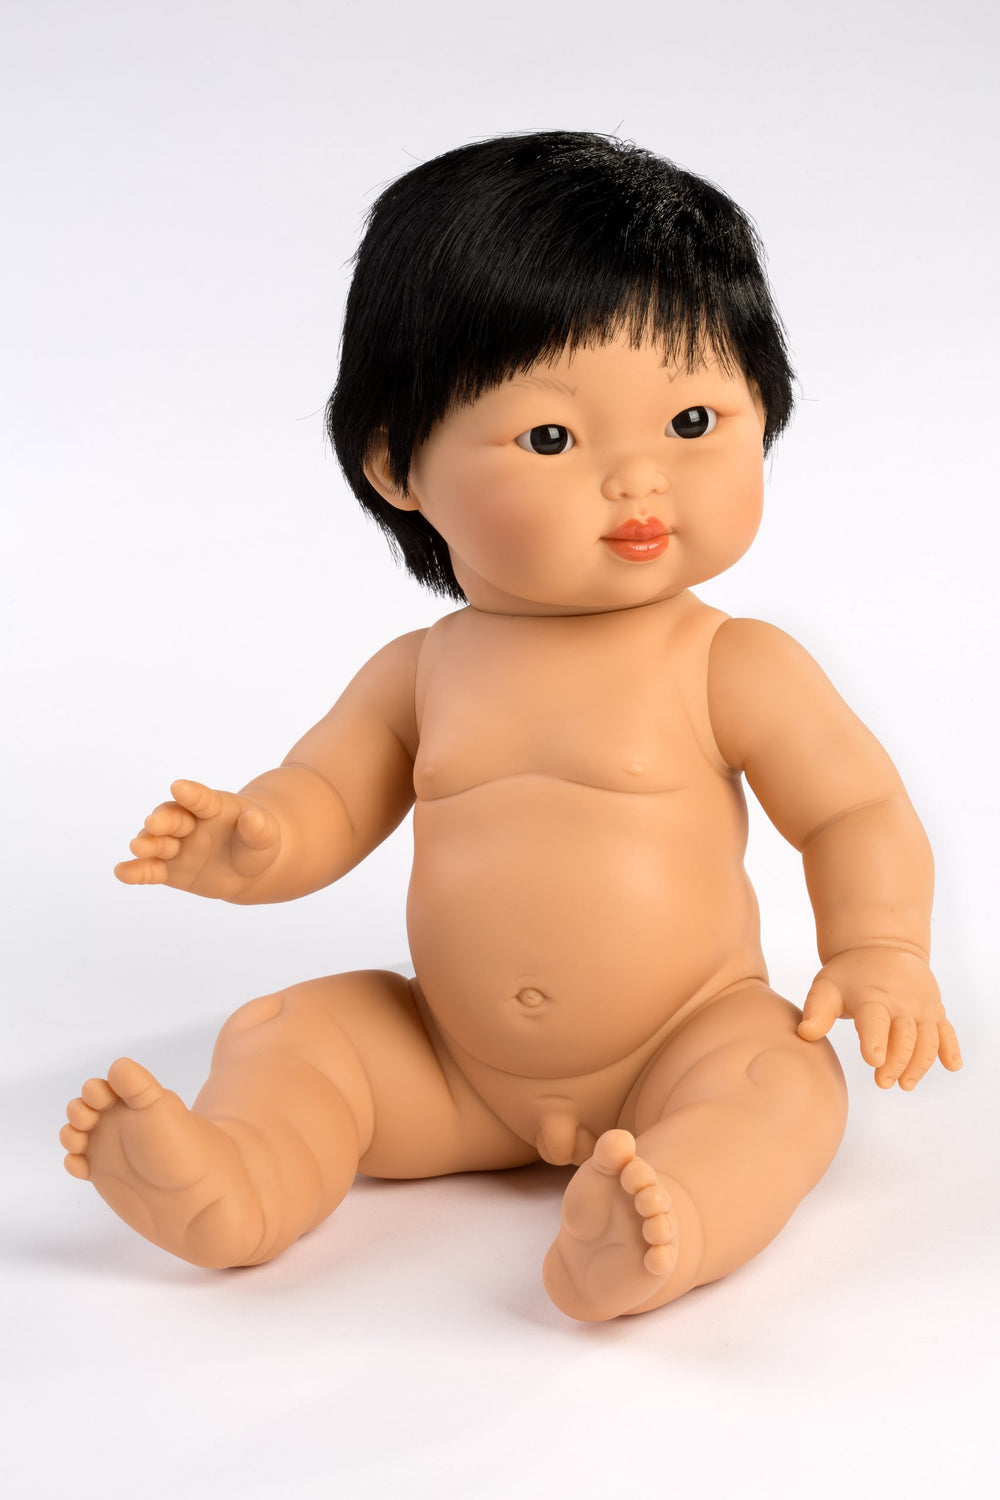 Mini Colettos | 34cm Doll - Taro